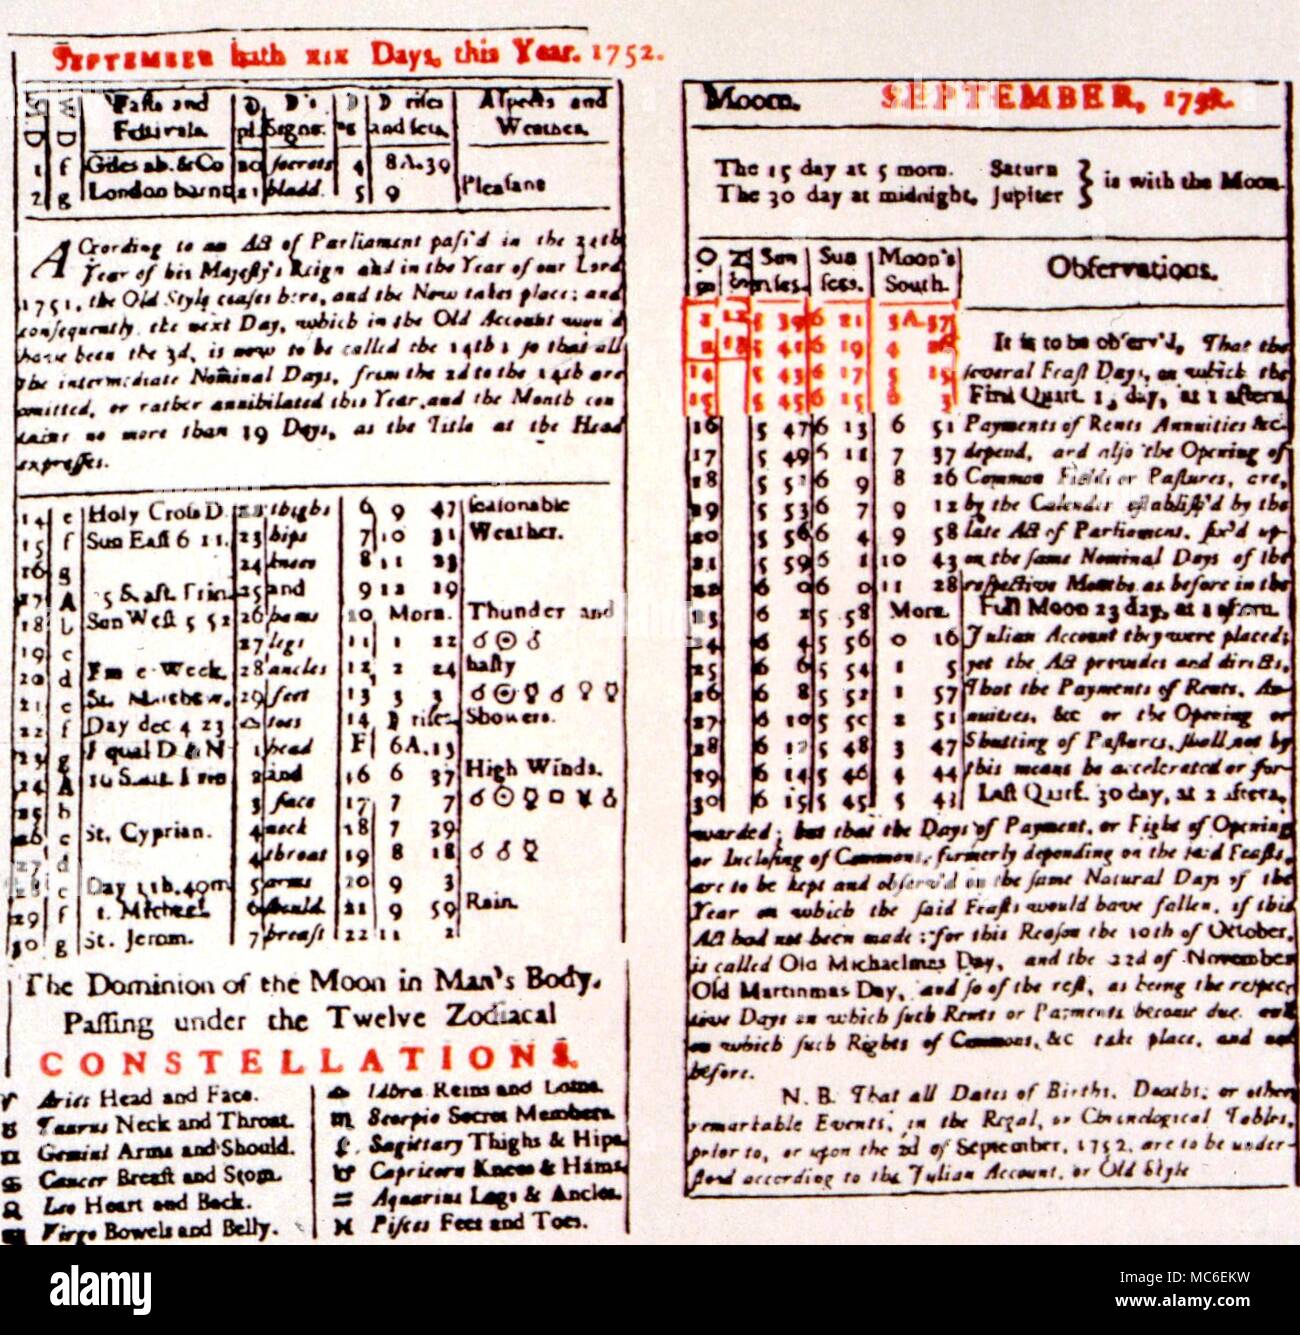 Calendrier - La réforme de 1752. Almanach pour 1752, avec des détails sur le mois de septembre, unique, avec une durée de 19 jours. C'est la dernière réforme calendaire britannique, fondée sur la réforme grégorienne de 1582 Banque D'Images